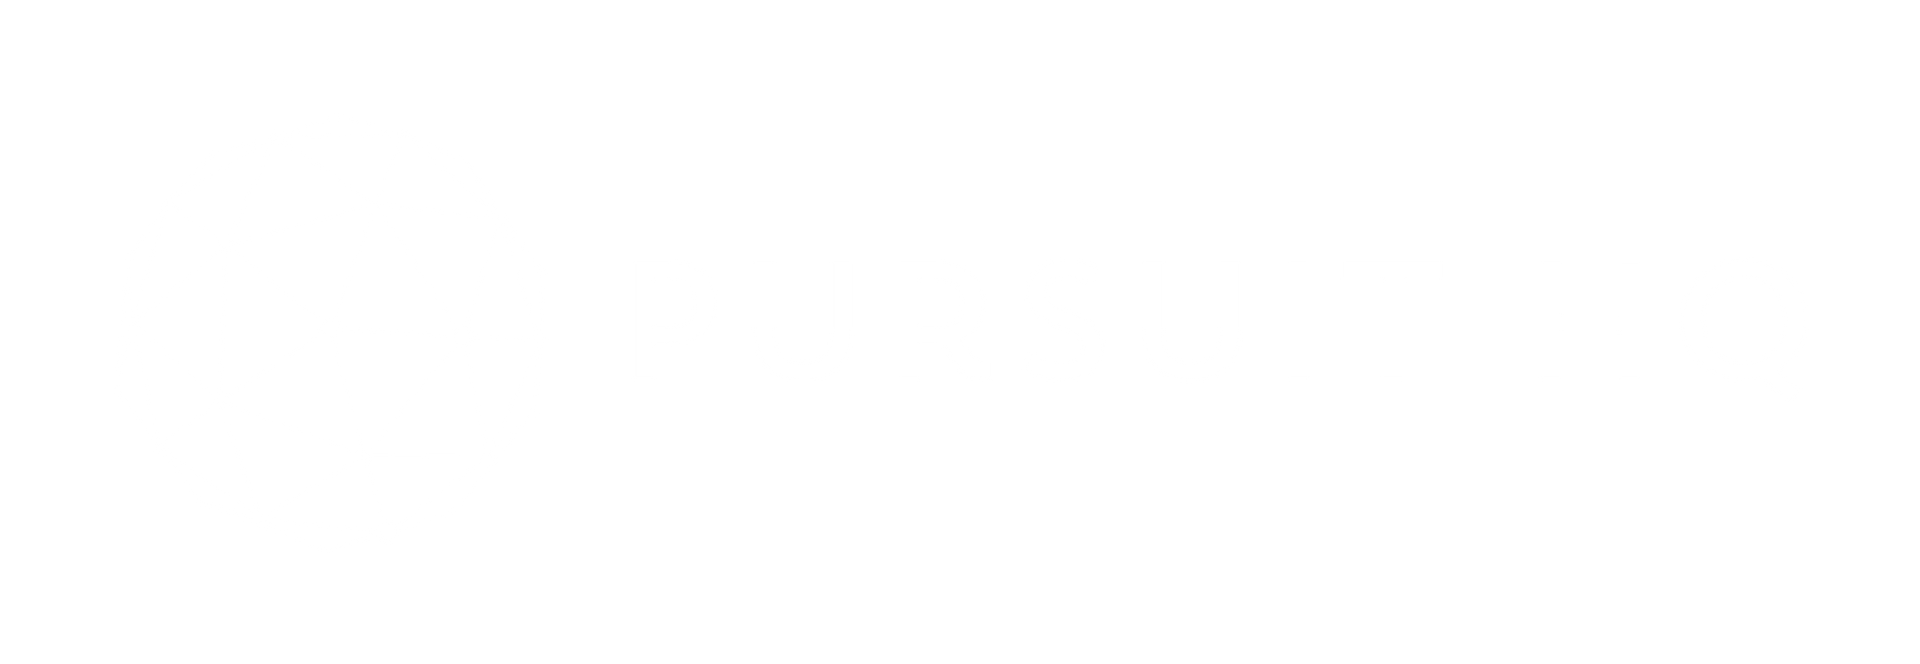 Pursuit HQ - White Logo - transparent background